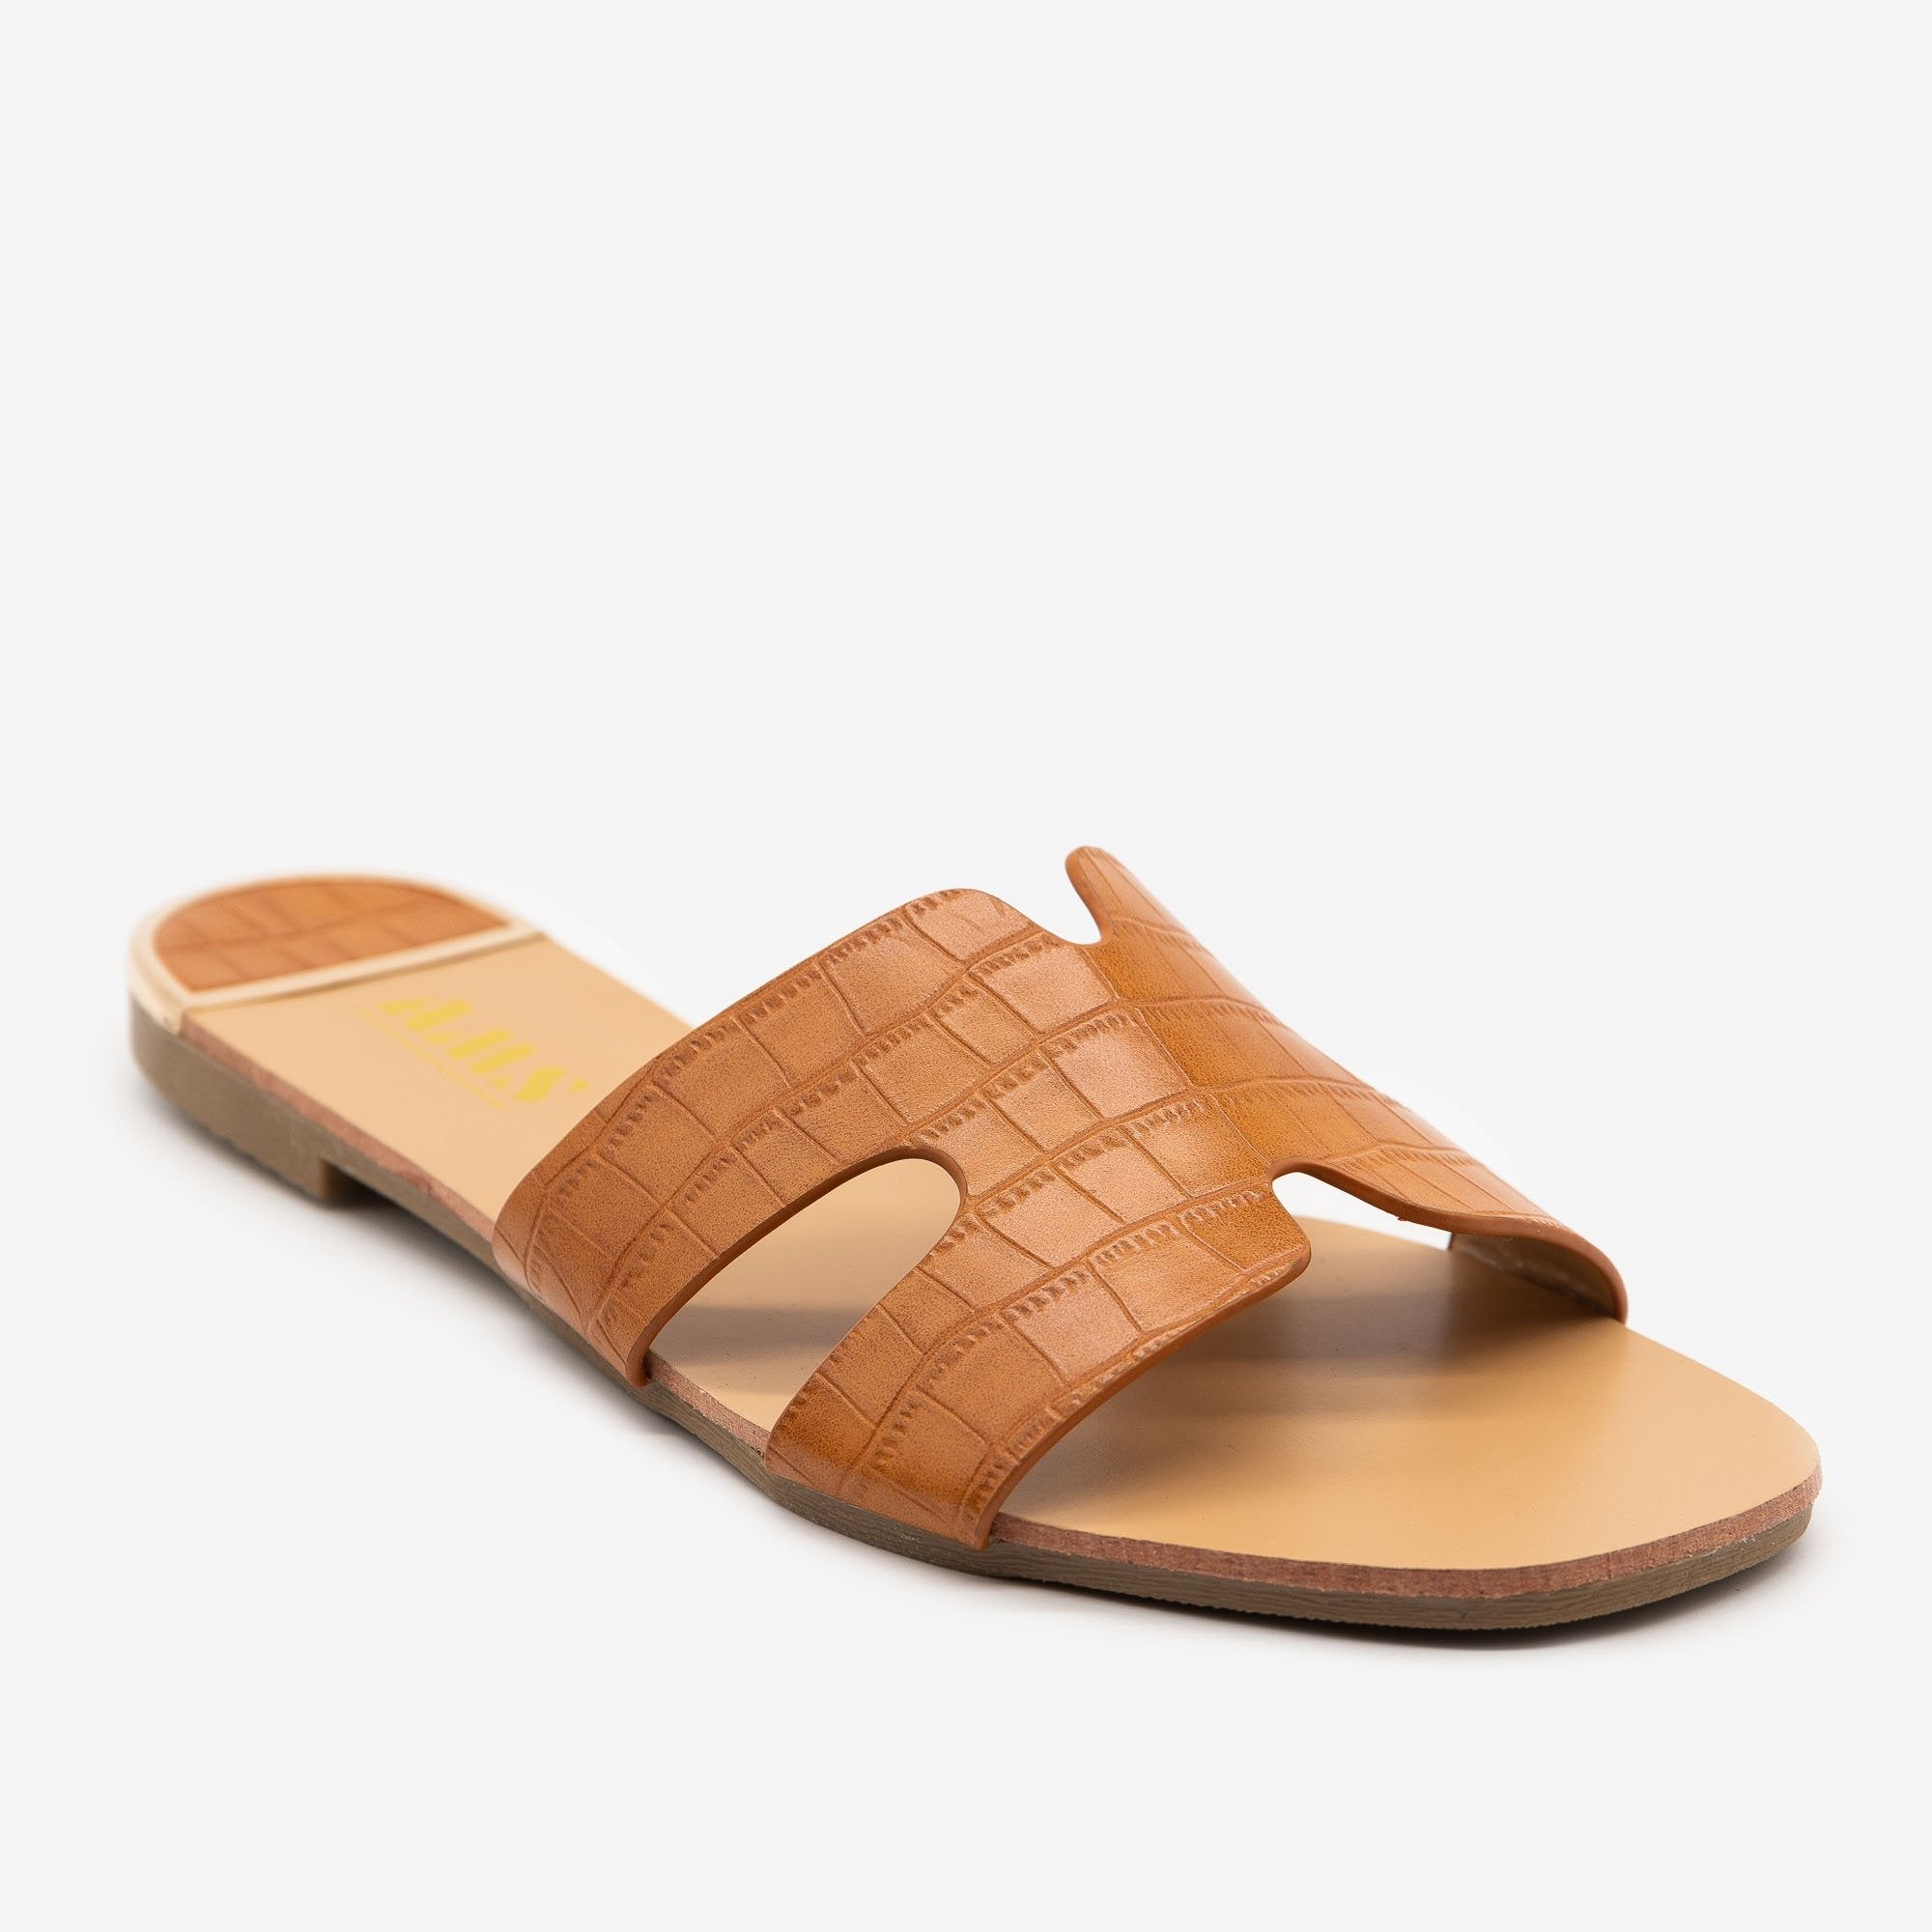 tan croc sandals